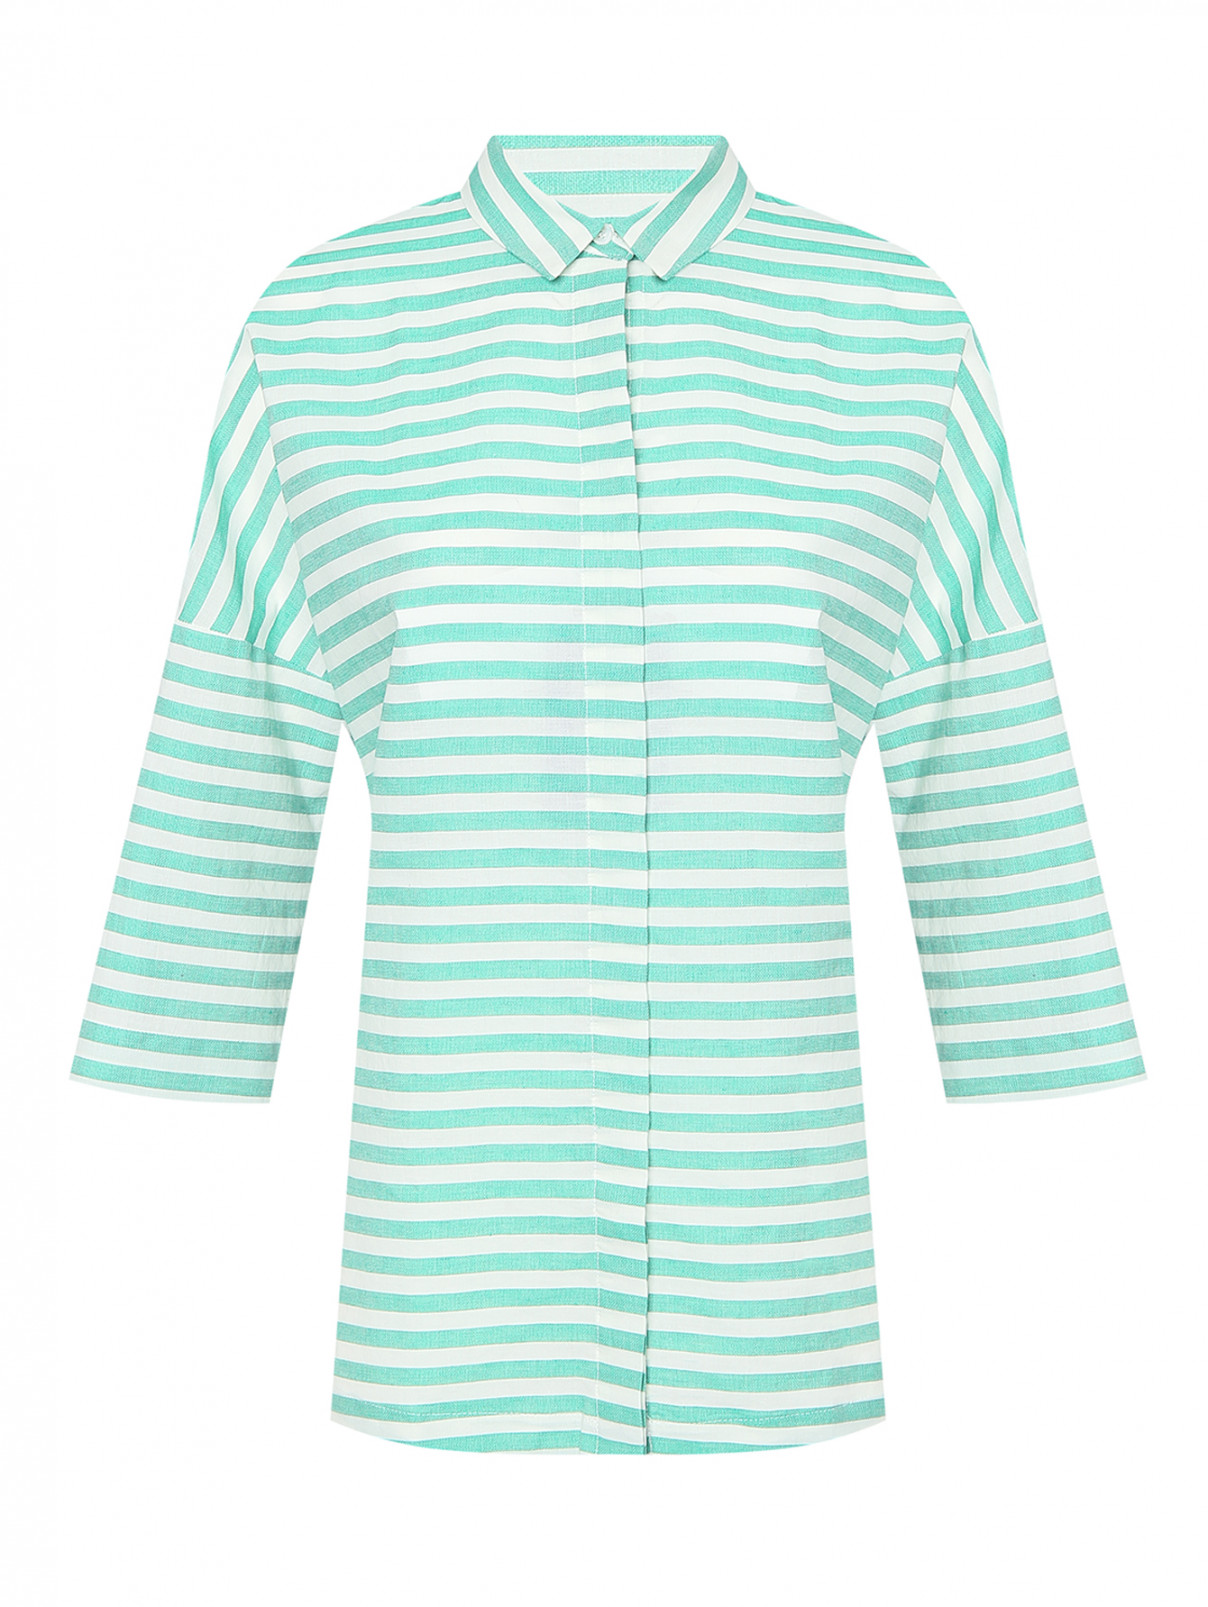 Рубашка из хлопка и льна с узором полоска Marina Rinaldi  –  Общий вид  – Цвет:  Узор